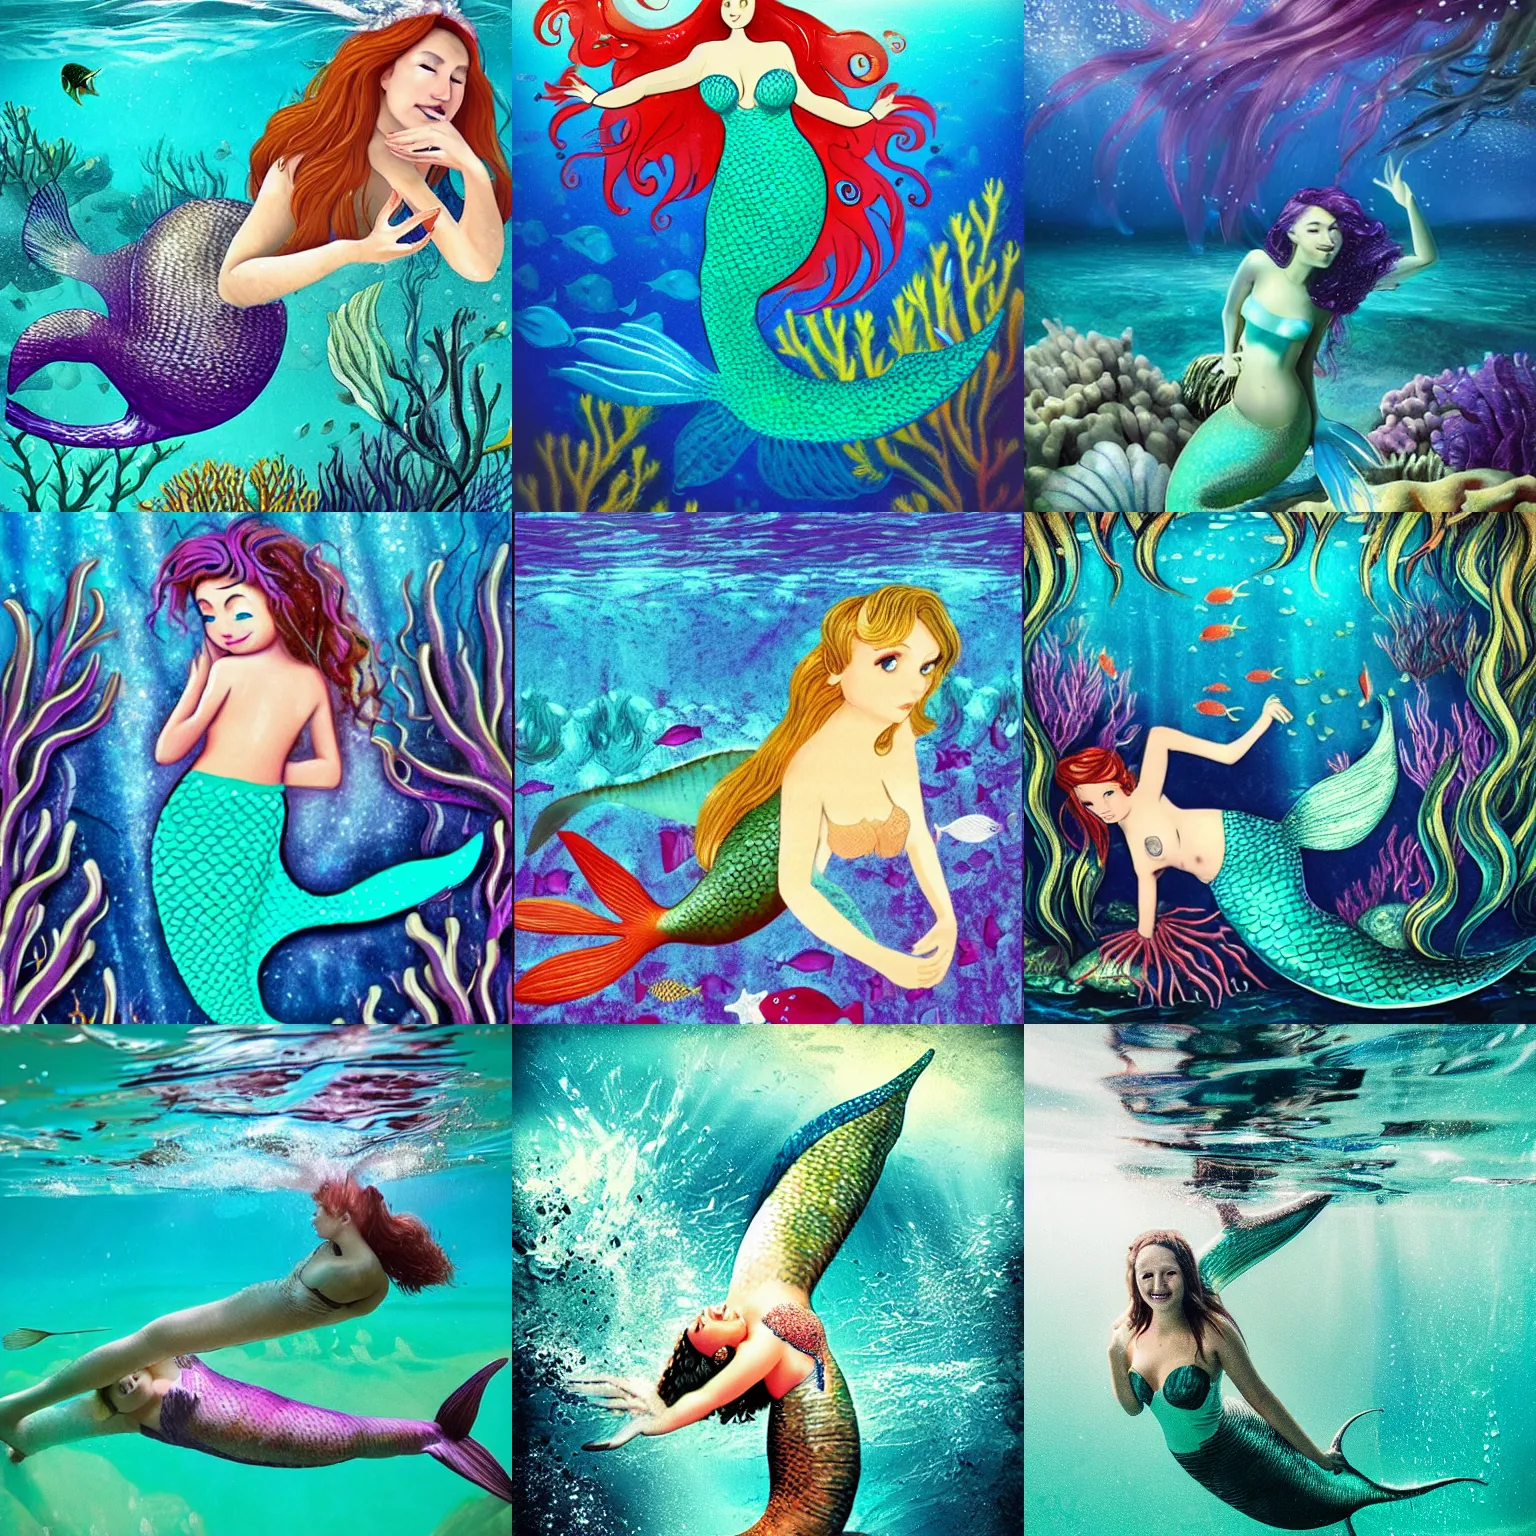 Prompt: mermaid underwater